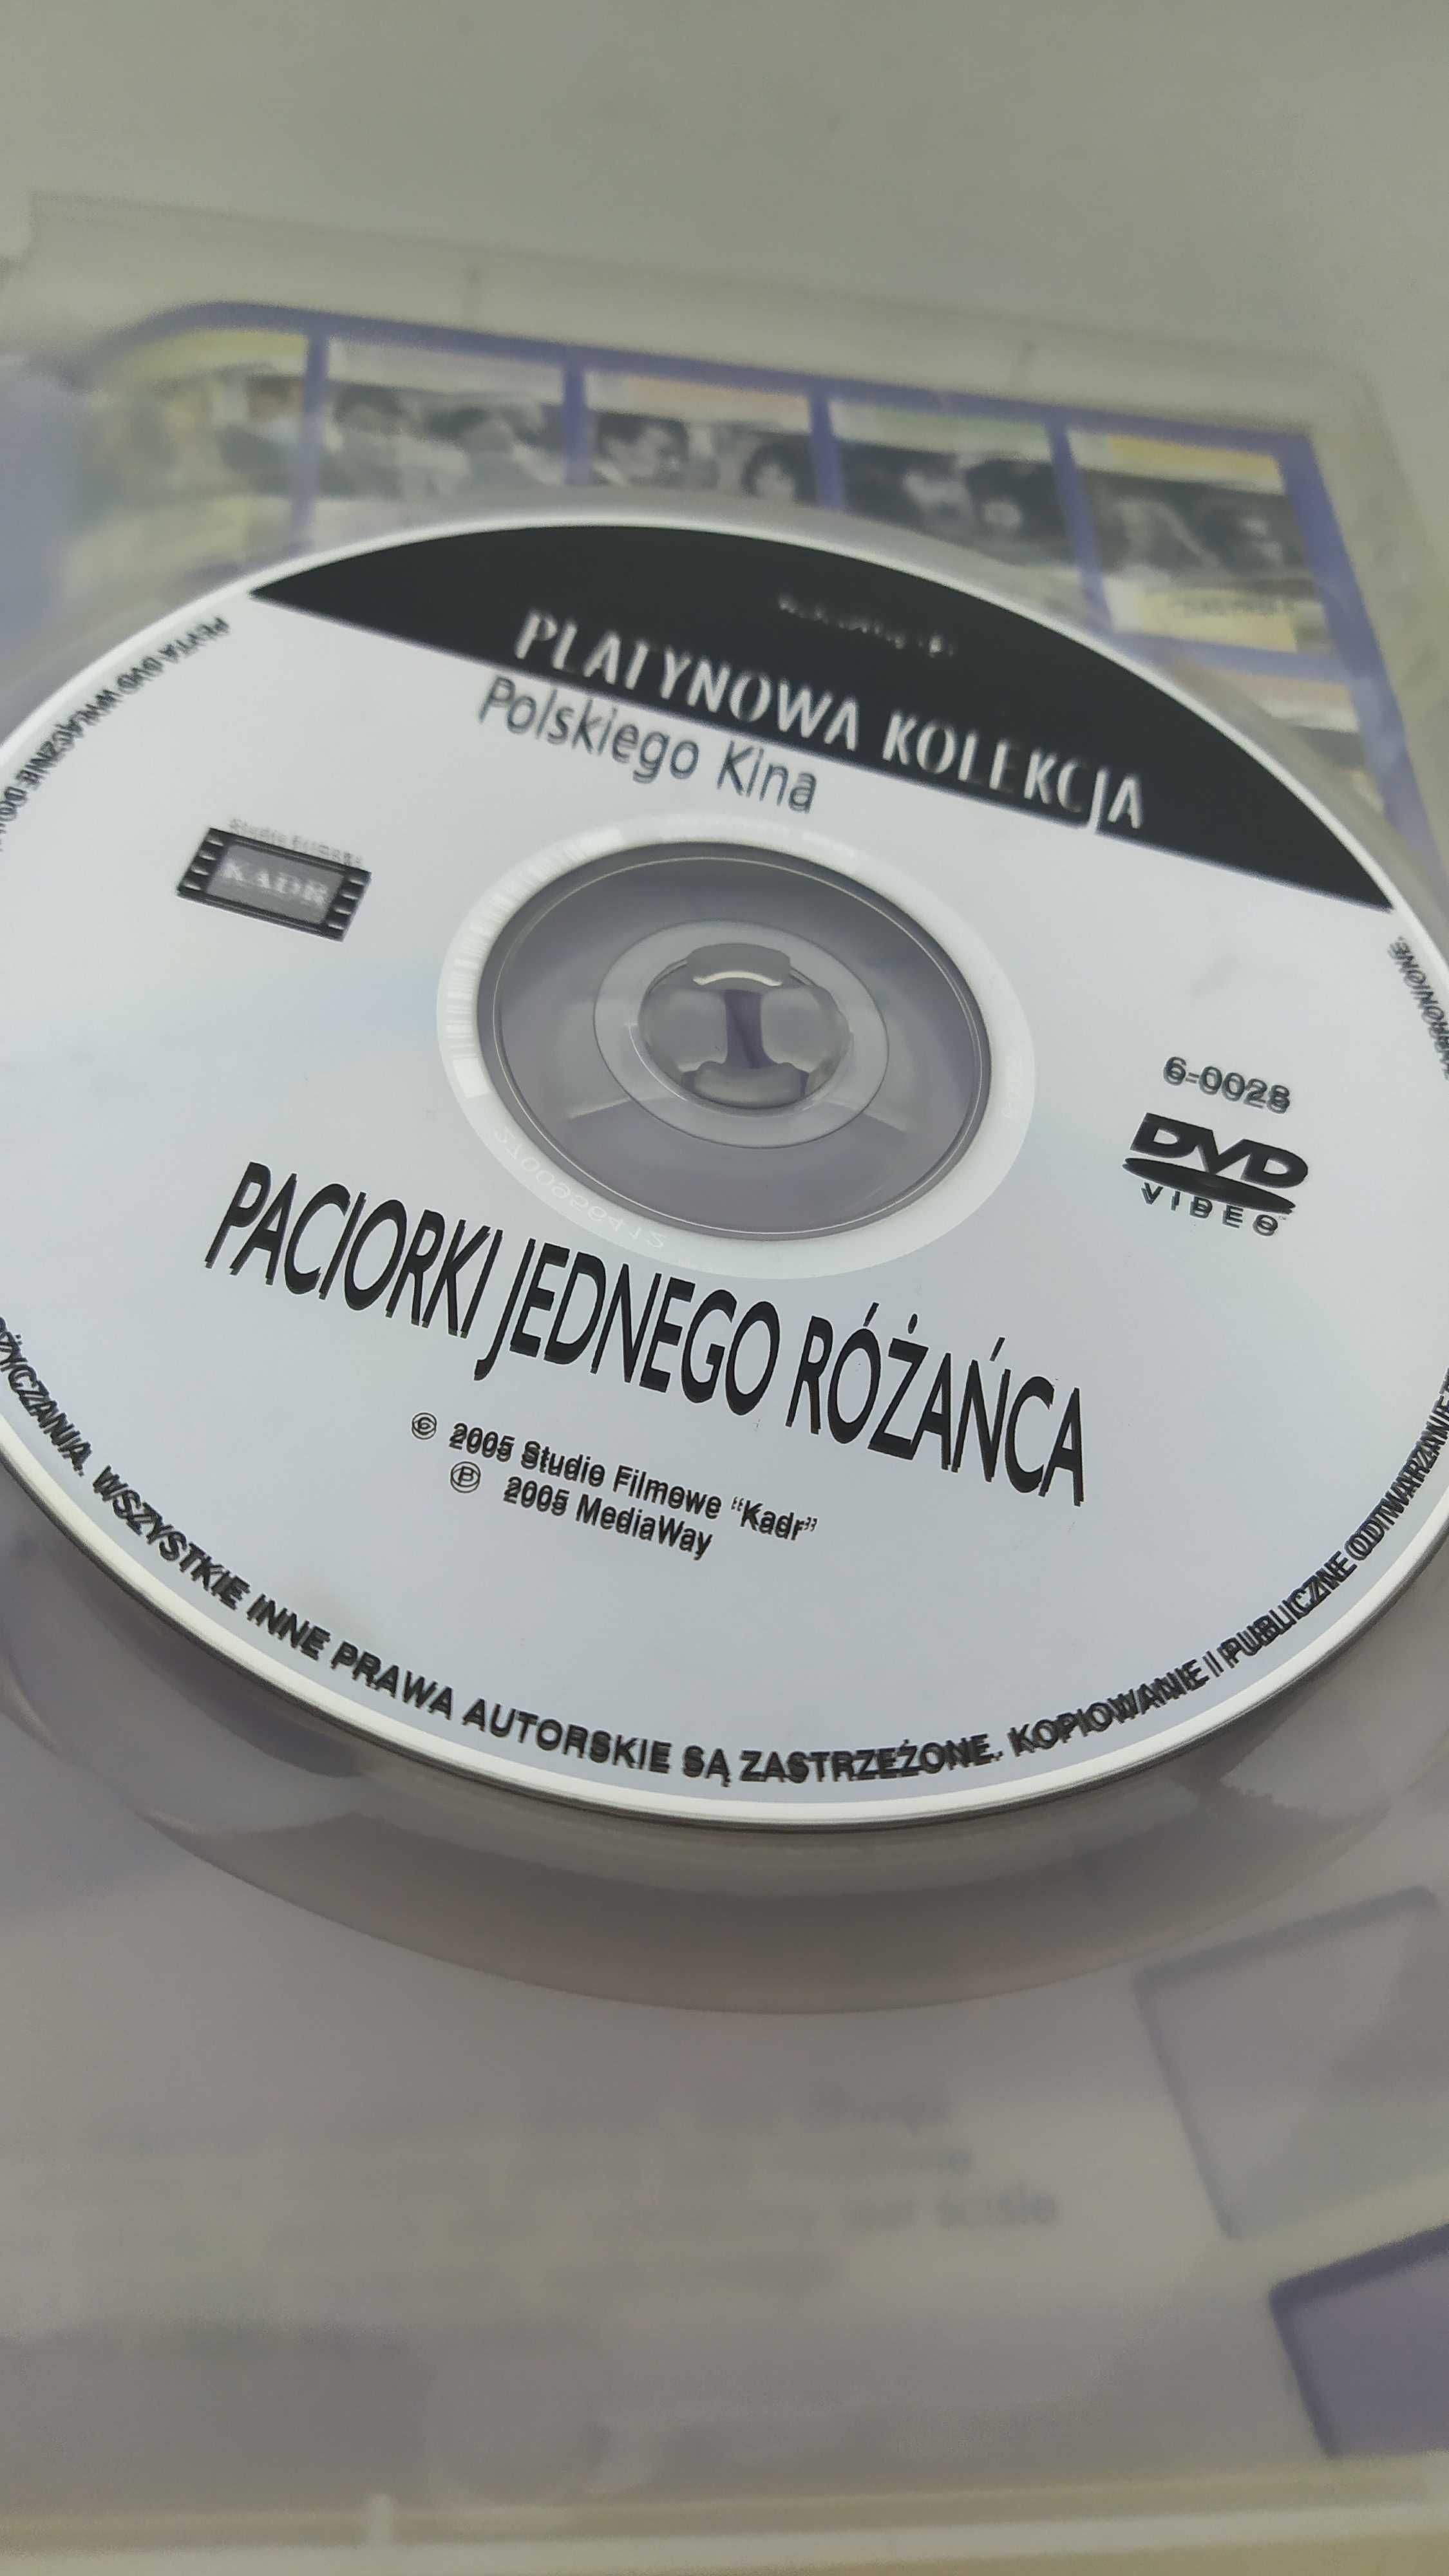 Paciorki jednego różańca DVD Platynowa Kolekcja Polskiego Kina Kutz